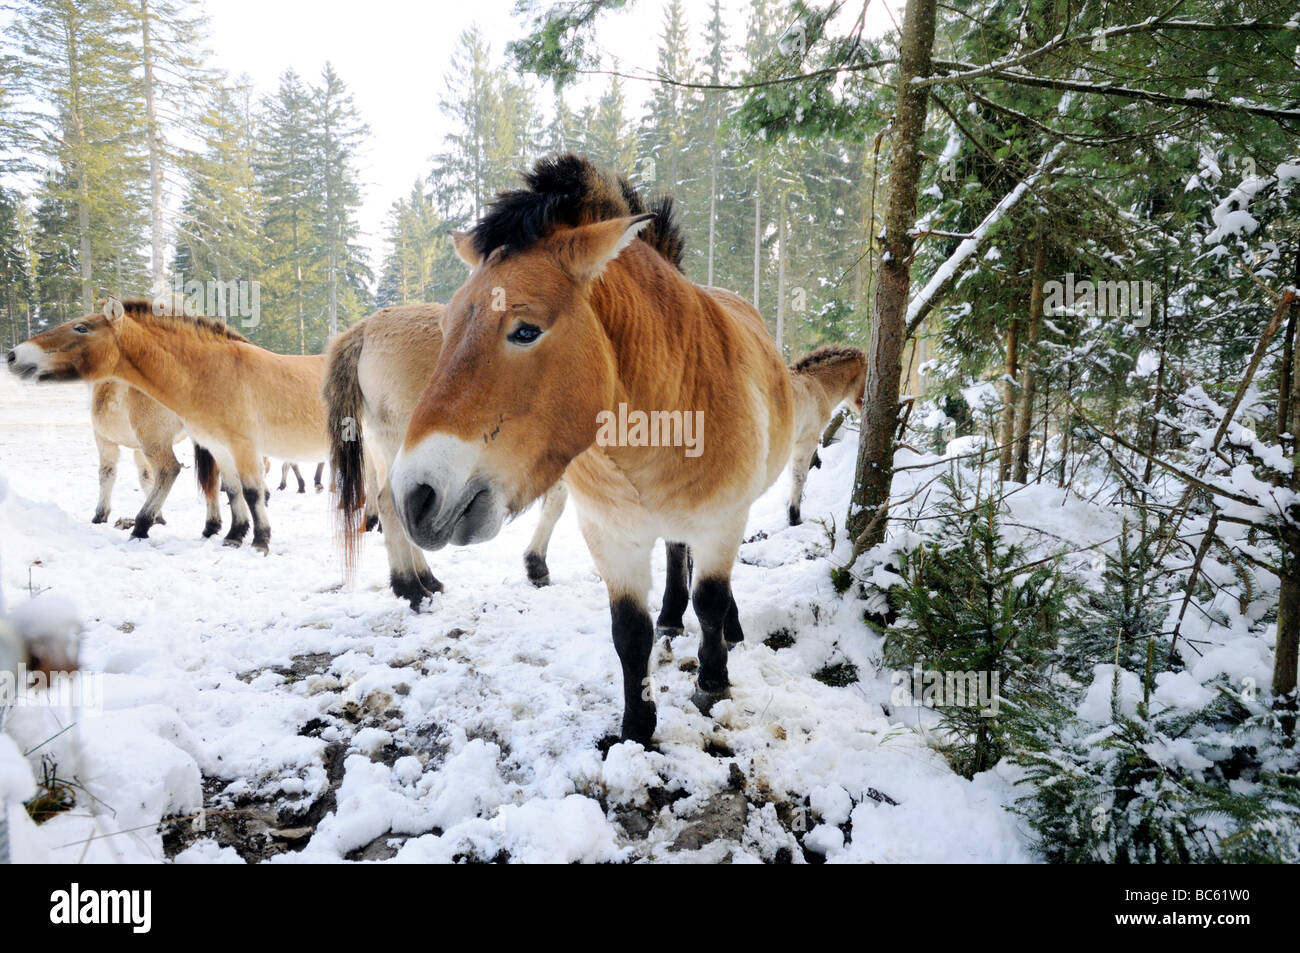 Chevaux de Przewalski (Equus caballus przewalskii) en forêt, parc national de la forêt bavaroise, Bavière, Allemagne Banque D'Images